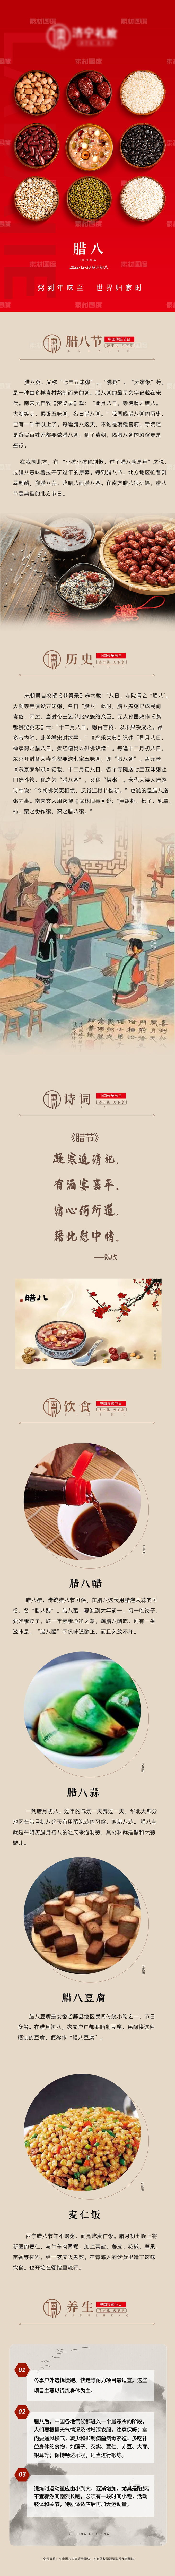 中国传统节日腊八节长图微信稿